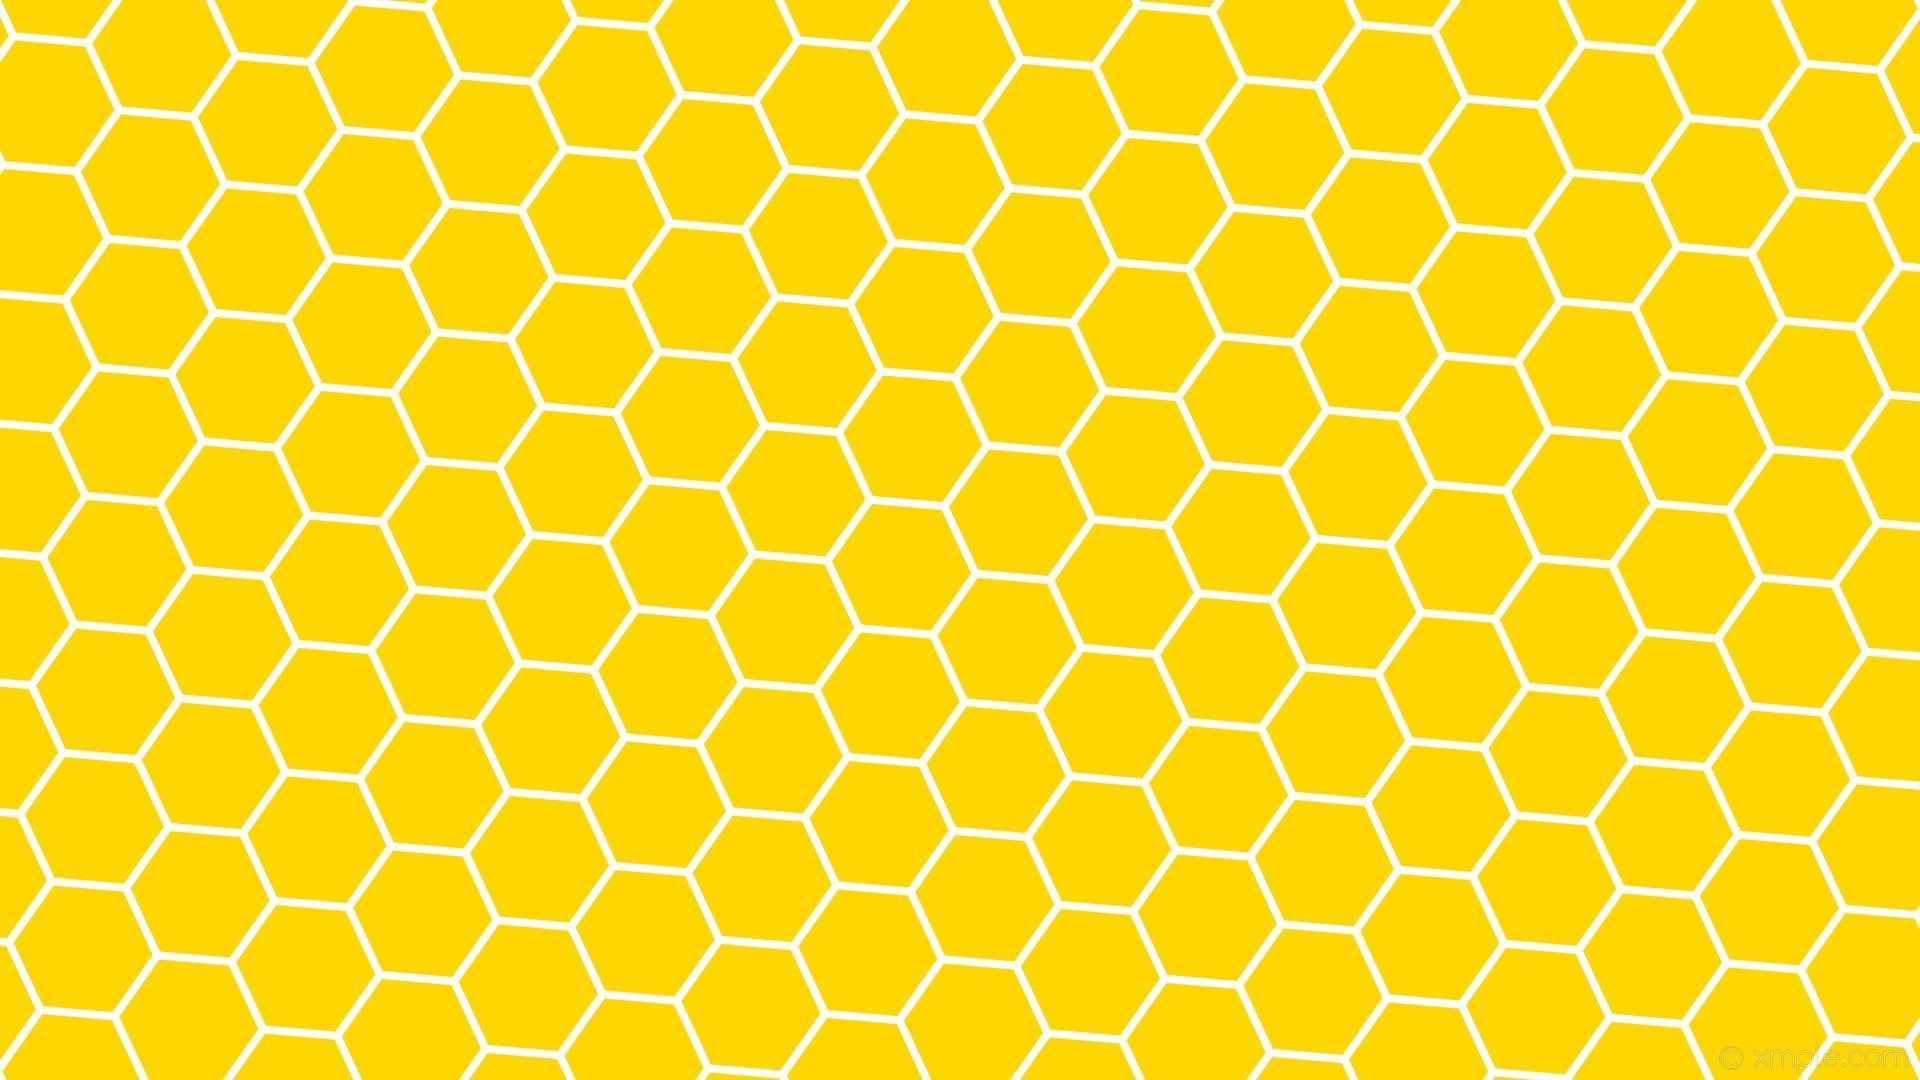 Сот и сот х. Соты пчелиные. Пчелиные соты текстура. Соты пчелиные фон. Фон соты медовые.